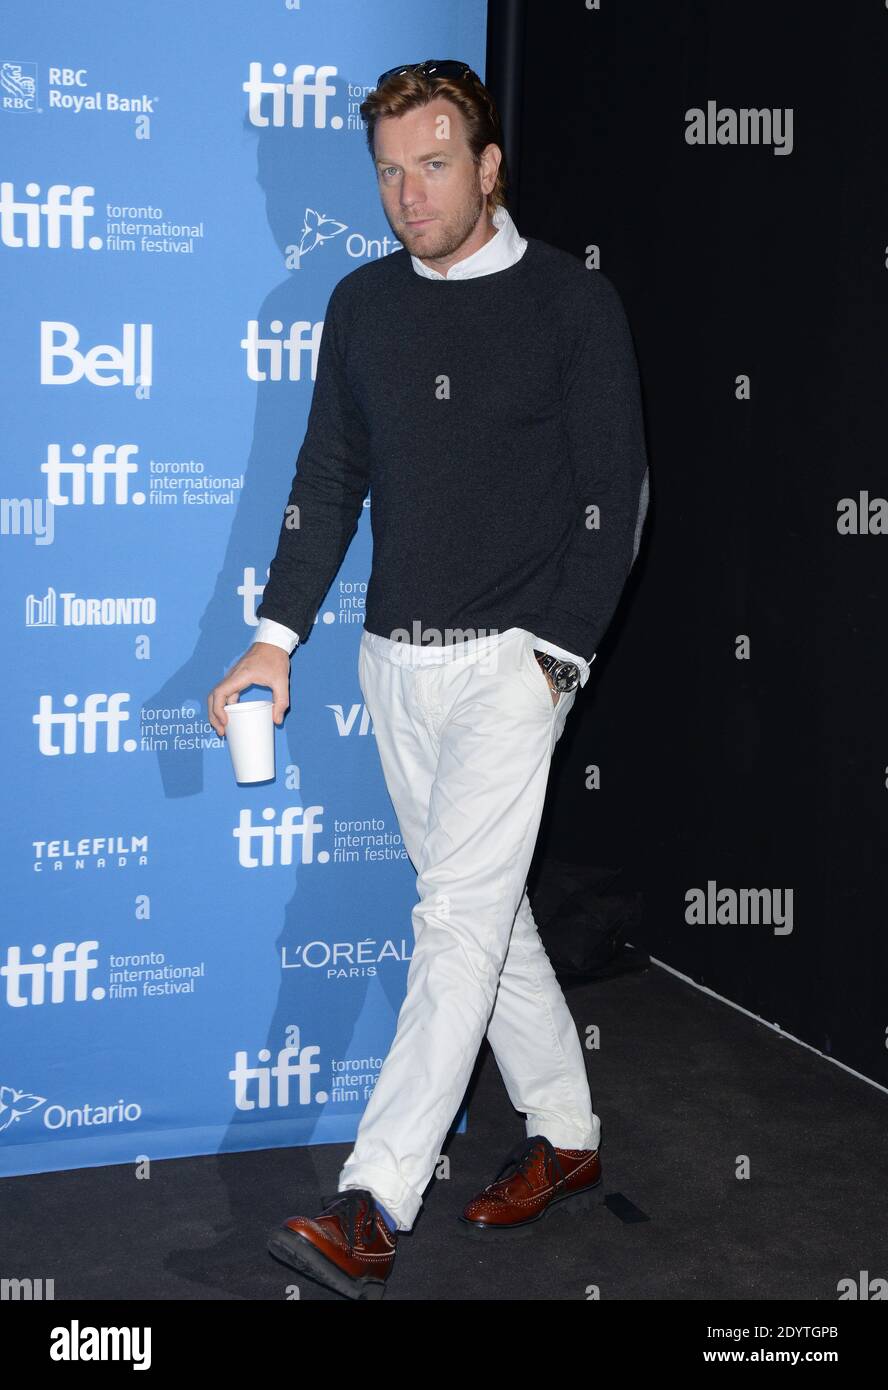 Ewan McGregor partecipa alla fotocellula August Osage County al Toronto International Film Festival 2013 di Toronto, ON, Canada, il 10 settembre 2013. Foto di Lionel Hahn/ABACAPRESS.COM Foto Stock